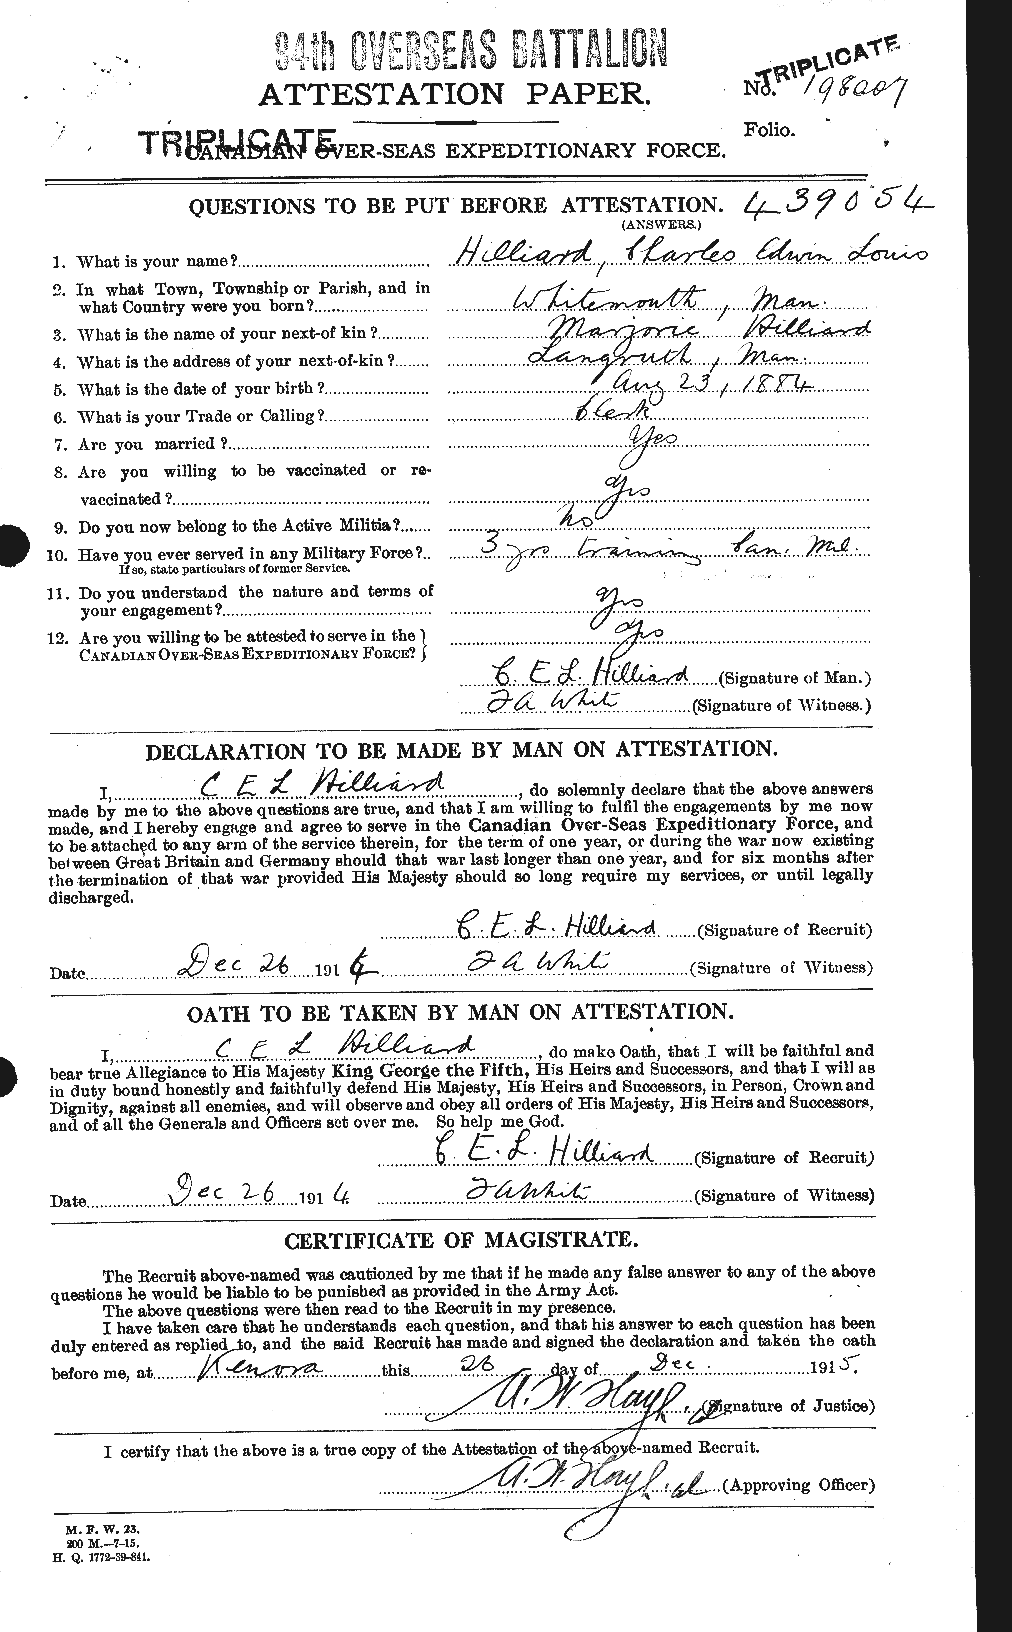 Dossiers du Personnel de la Première Guerre mondiale - CEC 393601a